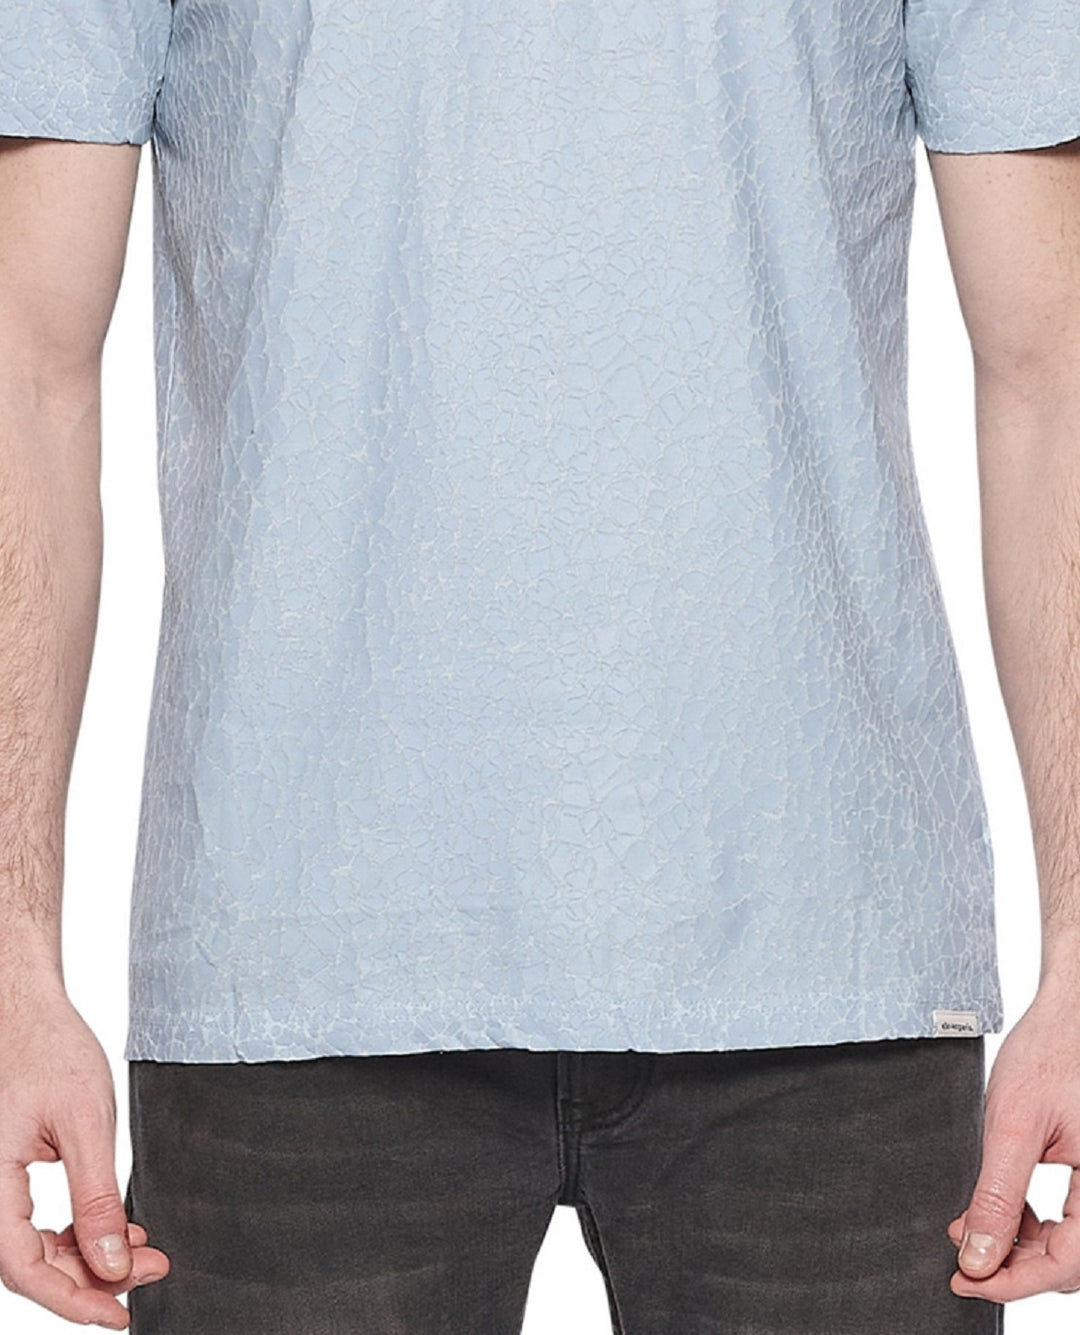 Elevenparis Men's Crackle Cotton T-Shirt Blue Size X-Large